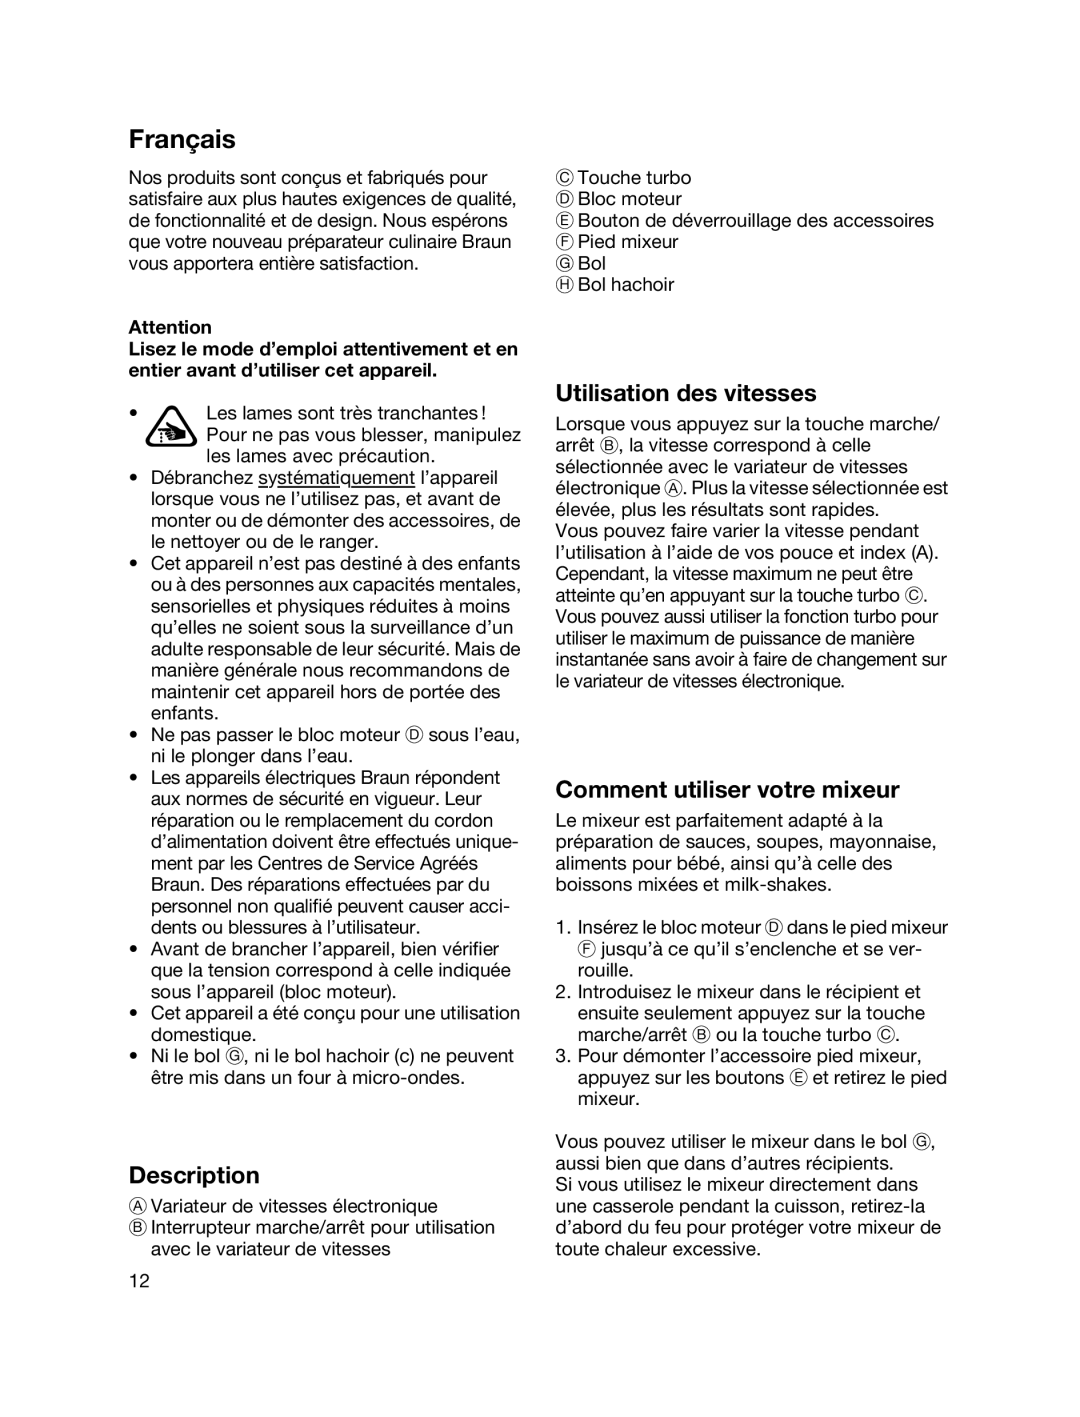 Braun MR700 manual Français, Utilisation des vitesses, Comment utiliser votre mixeur, Description 